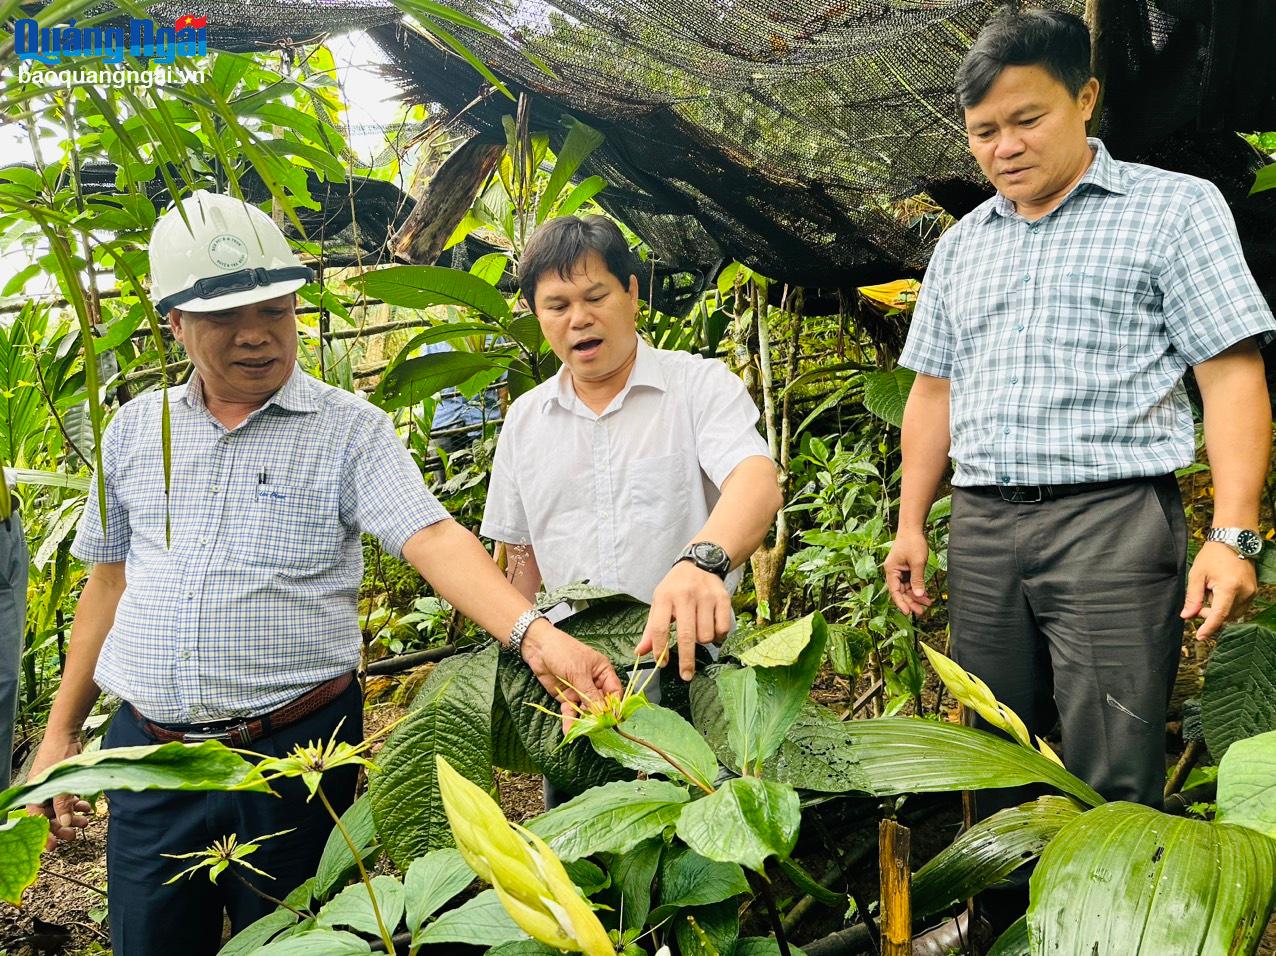 Phó Chủ tịch UBND tỉnh Trần Phước Hiền kiểm tra vườn ươm cây dược liệu tại thôn Quế, xã Trà Bùi (Trà Bồng).